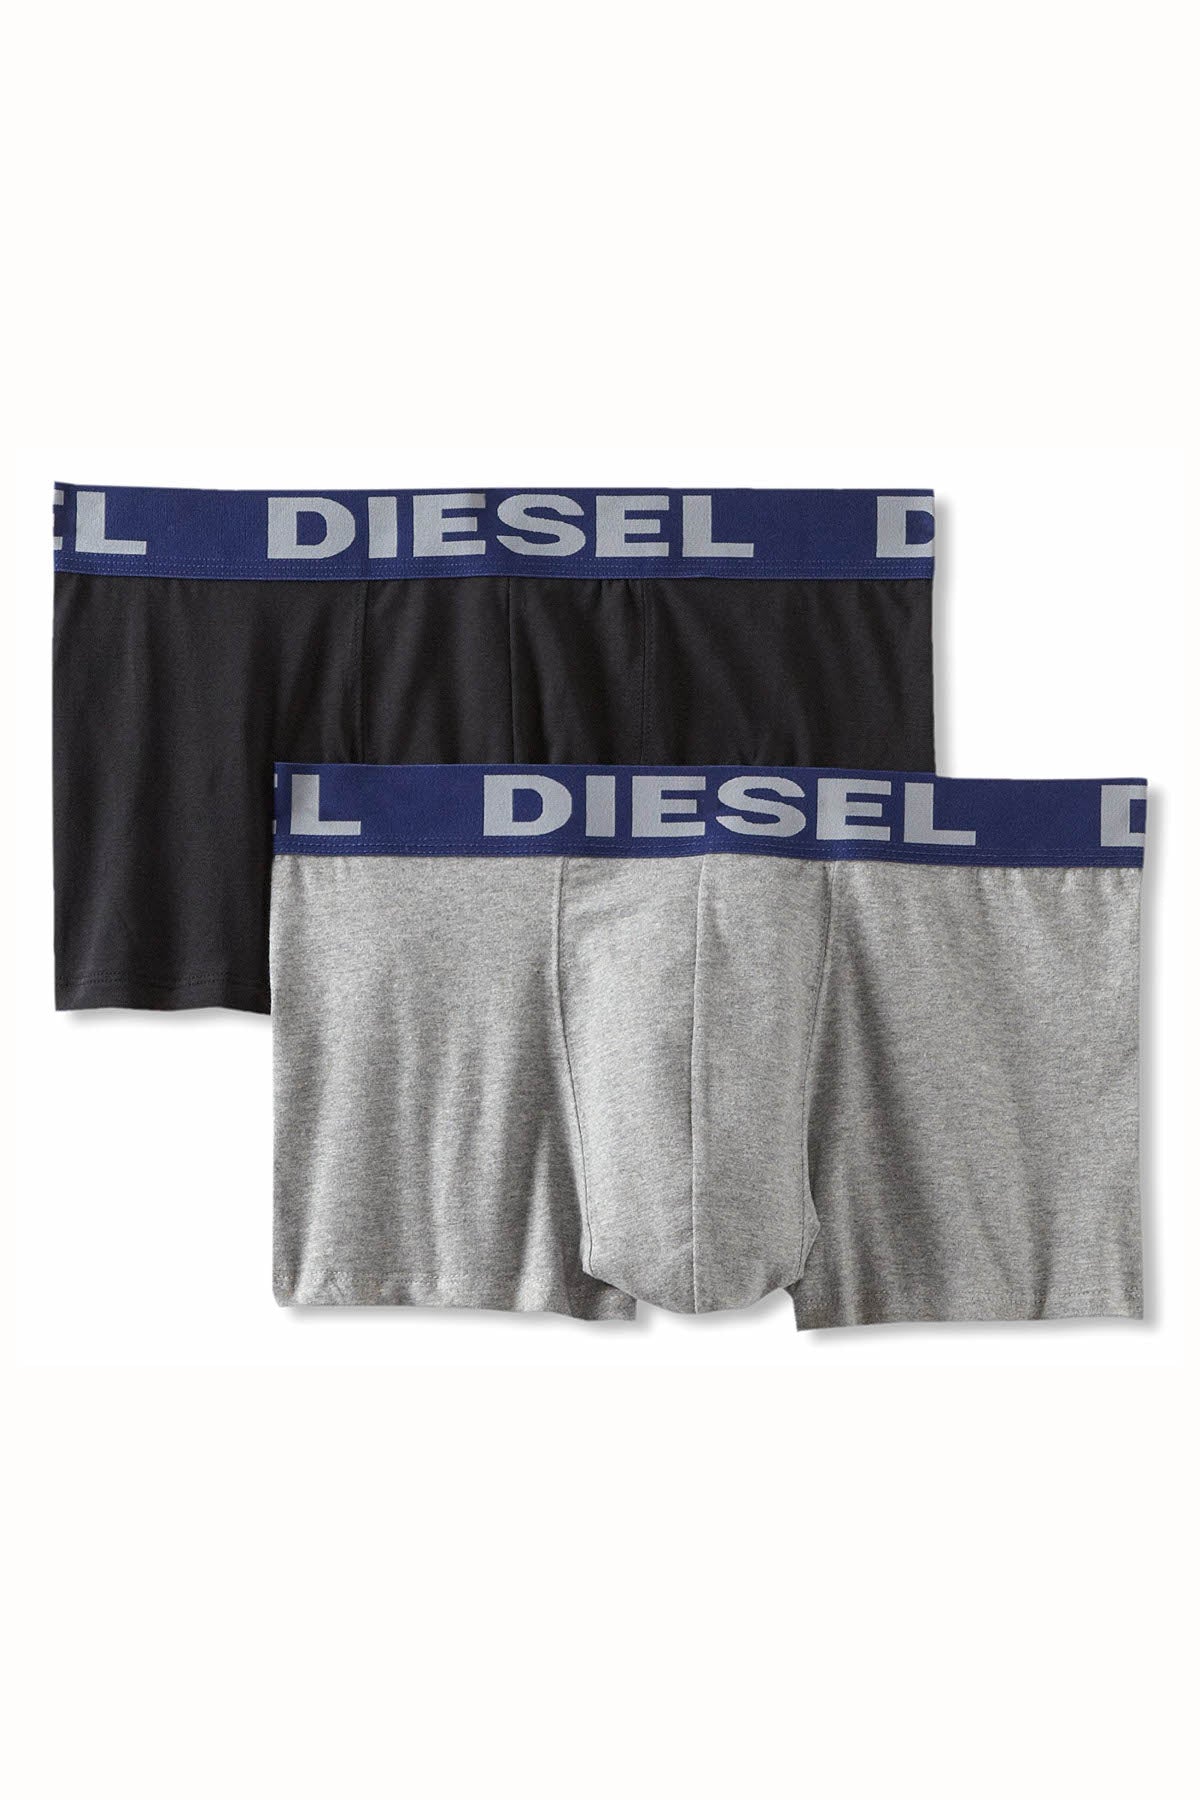 Diesel Black/Grey Kory Boxer Trunk 2-Pack